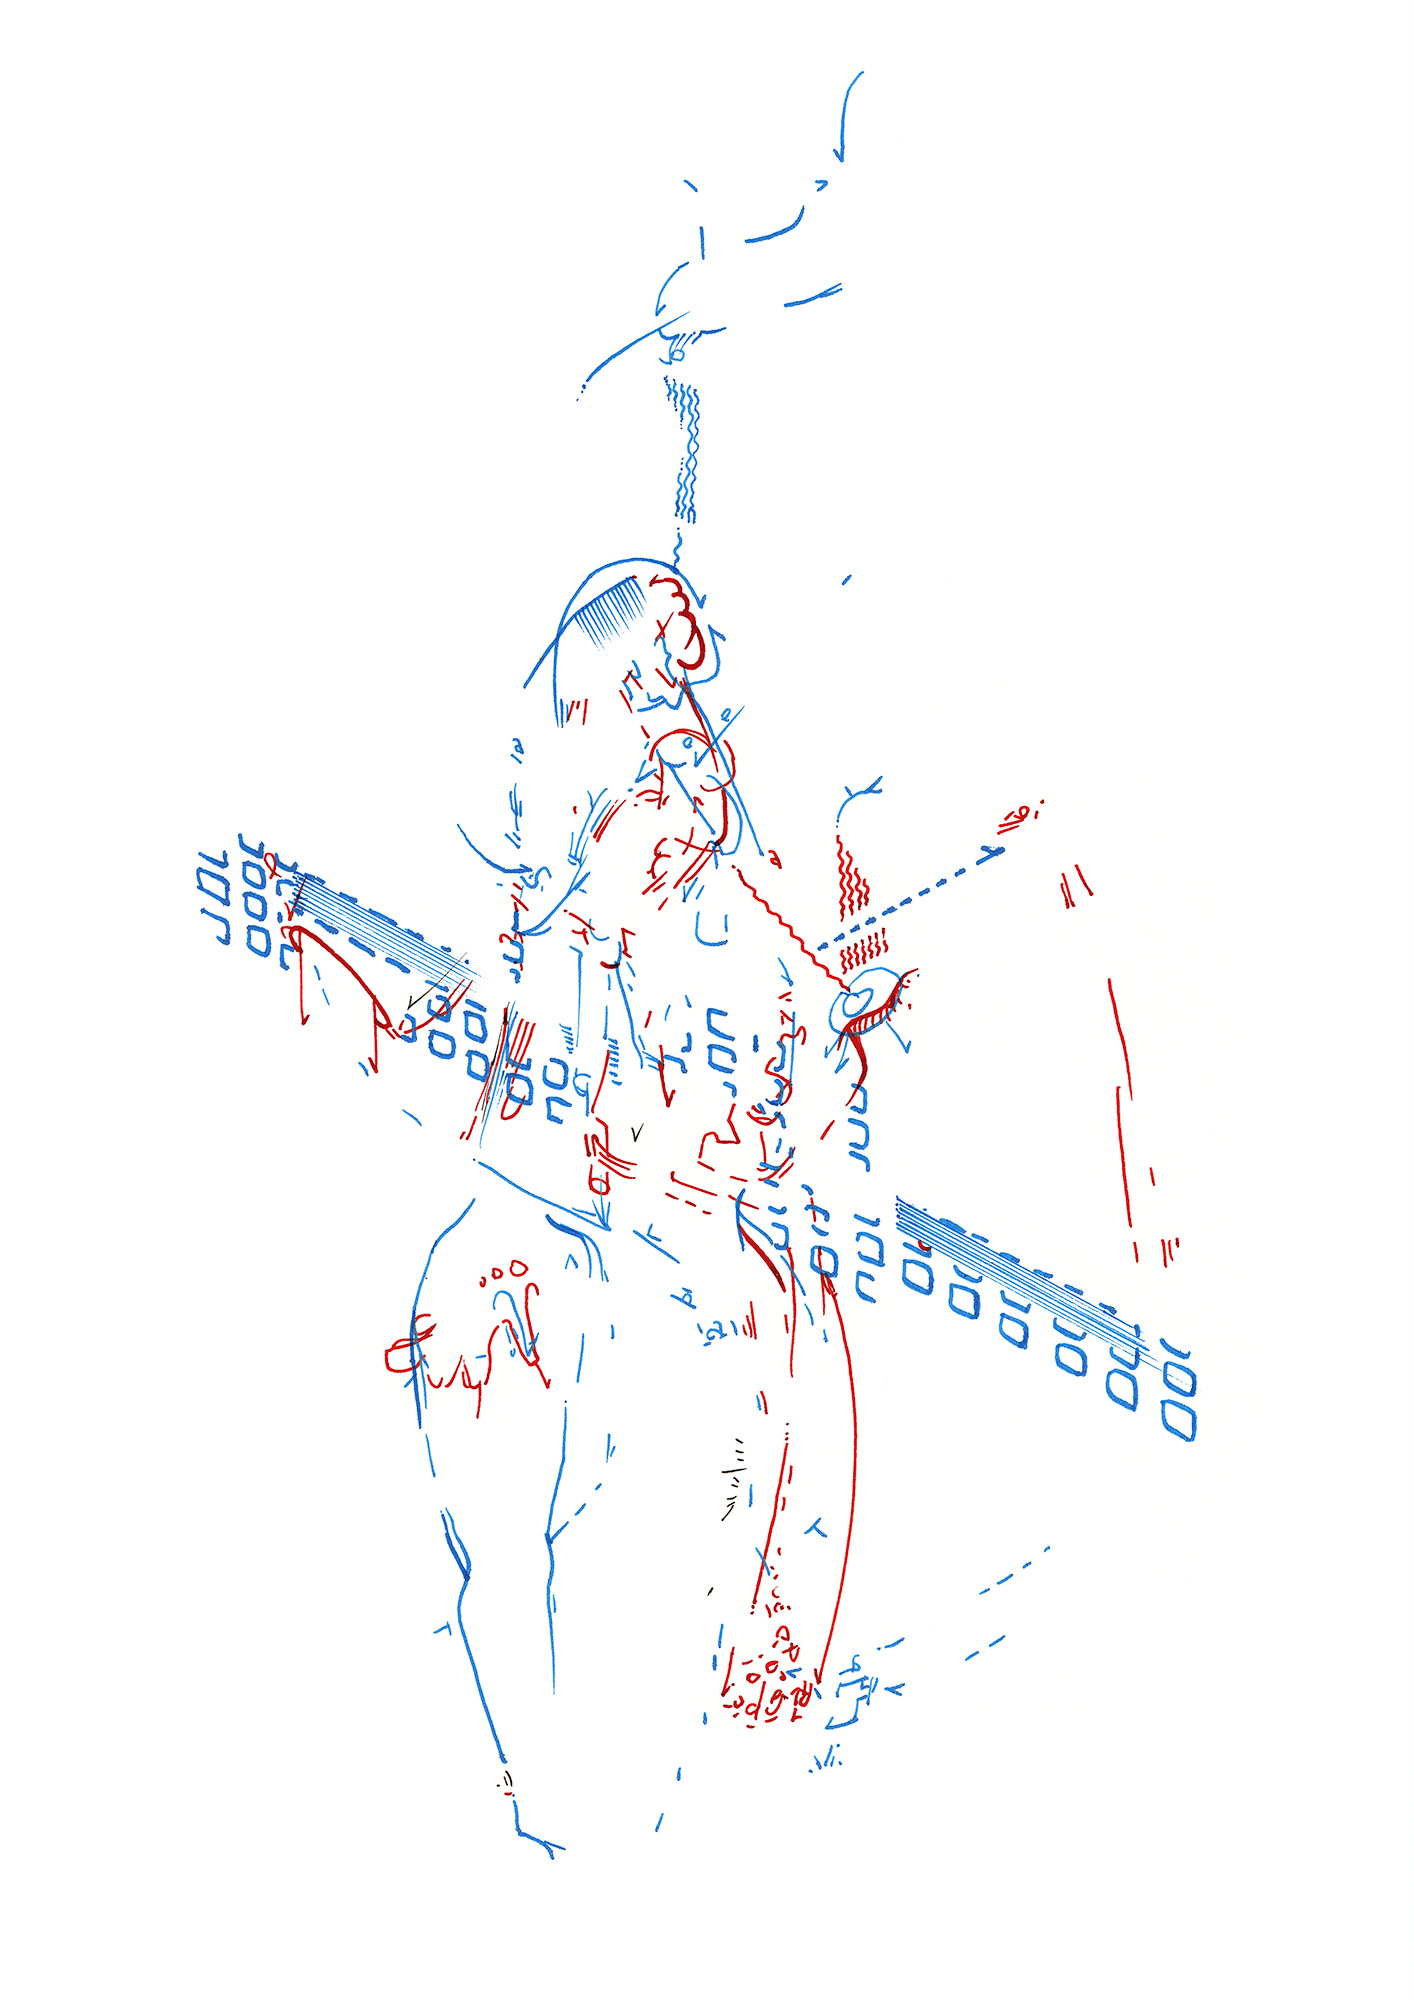 Hannes Kater: Tageszeichnung (Zeichnung/drawing) vom 01.11.2015 (1414 x 2000 Pixel)